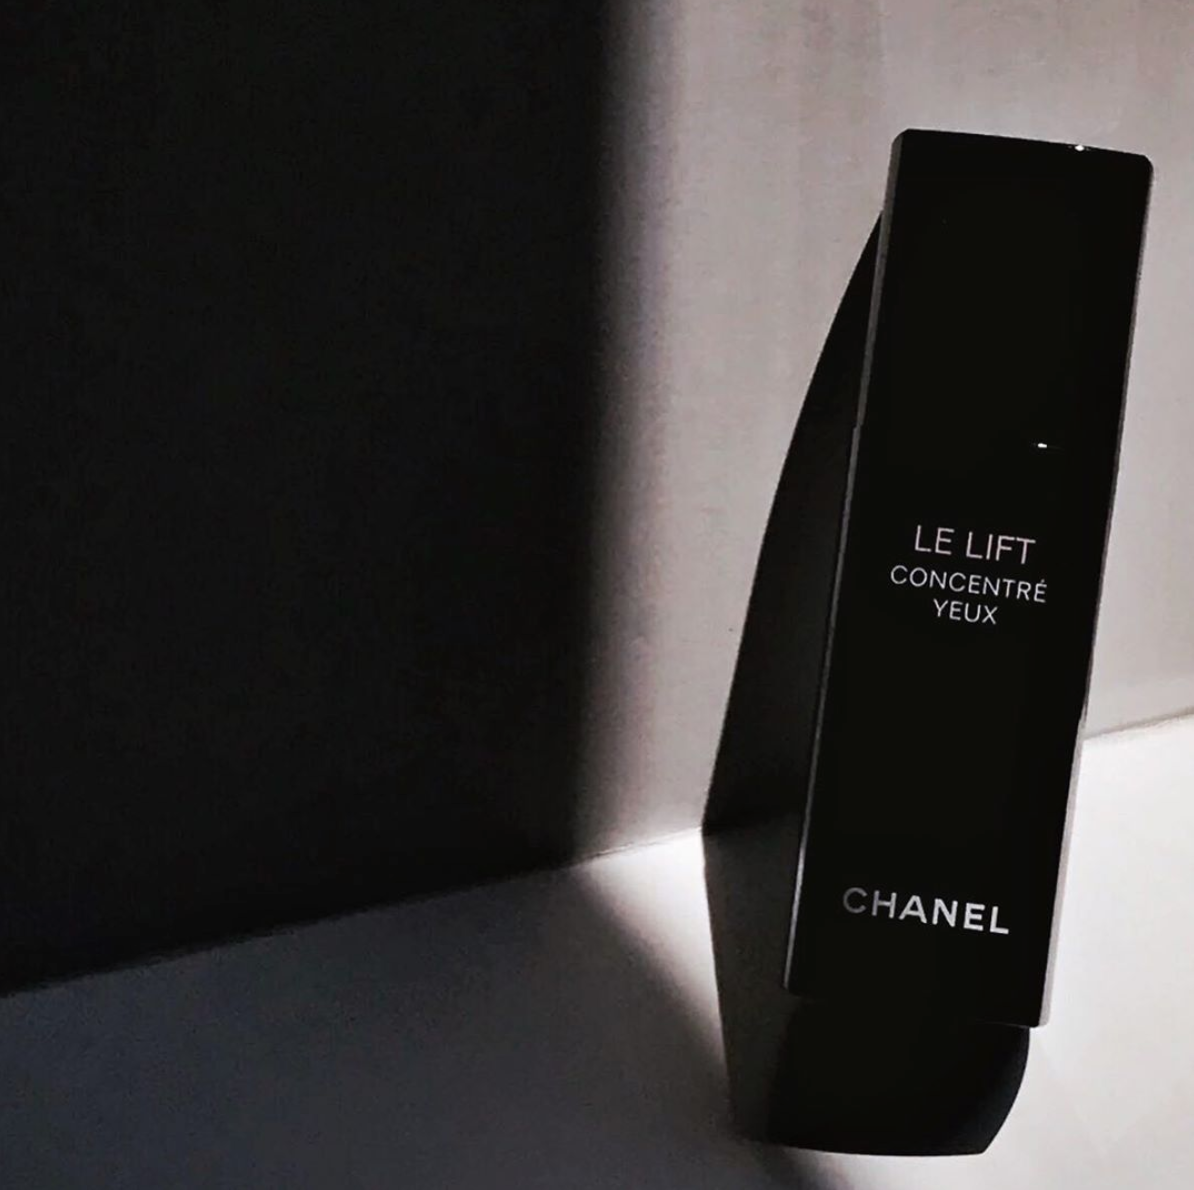 Chanel Le Lift concentre yeux